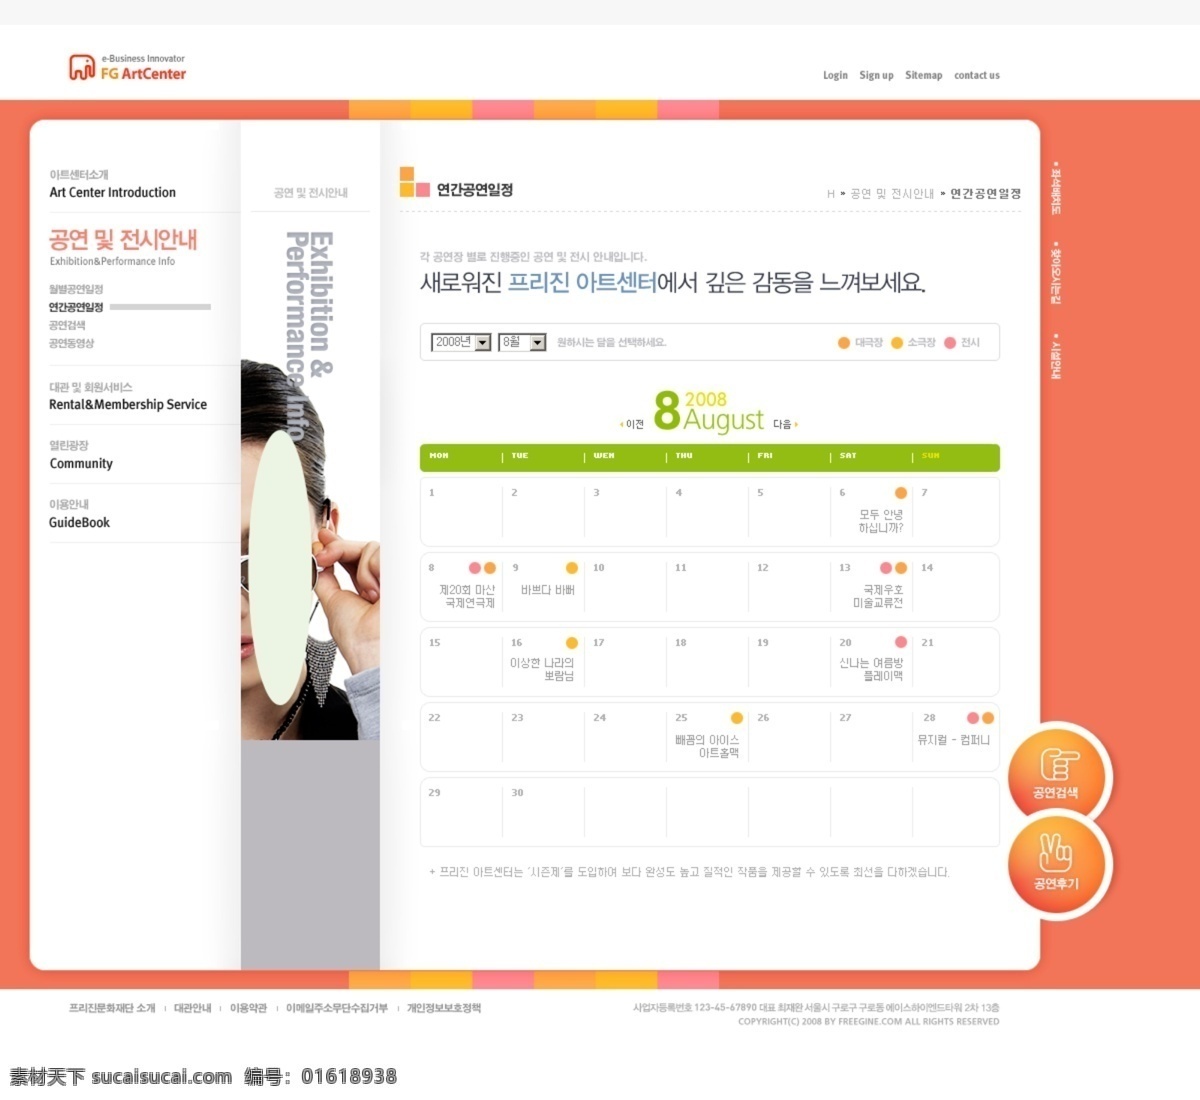 网页模板 女性网站模板 商品网站 超市网站 dw模板 韩国时尚网页 web 界面设计 韩文模板 网页素材 其他网页素材